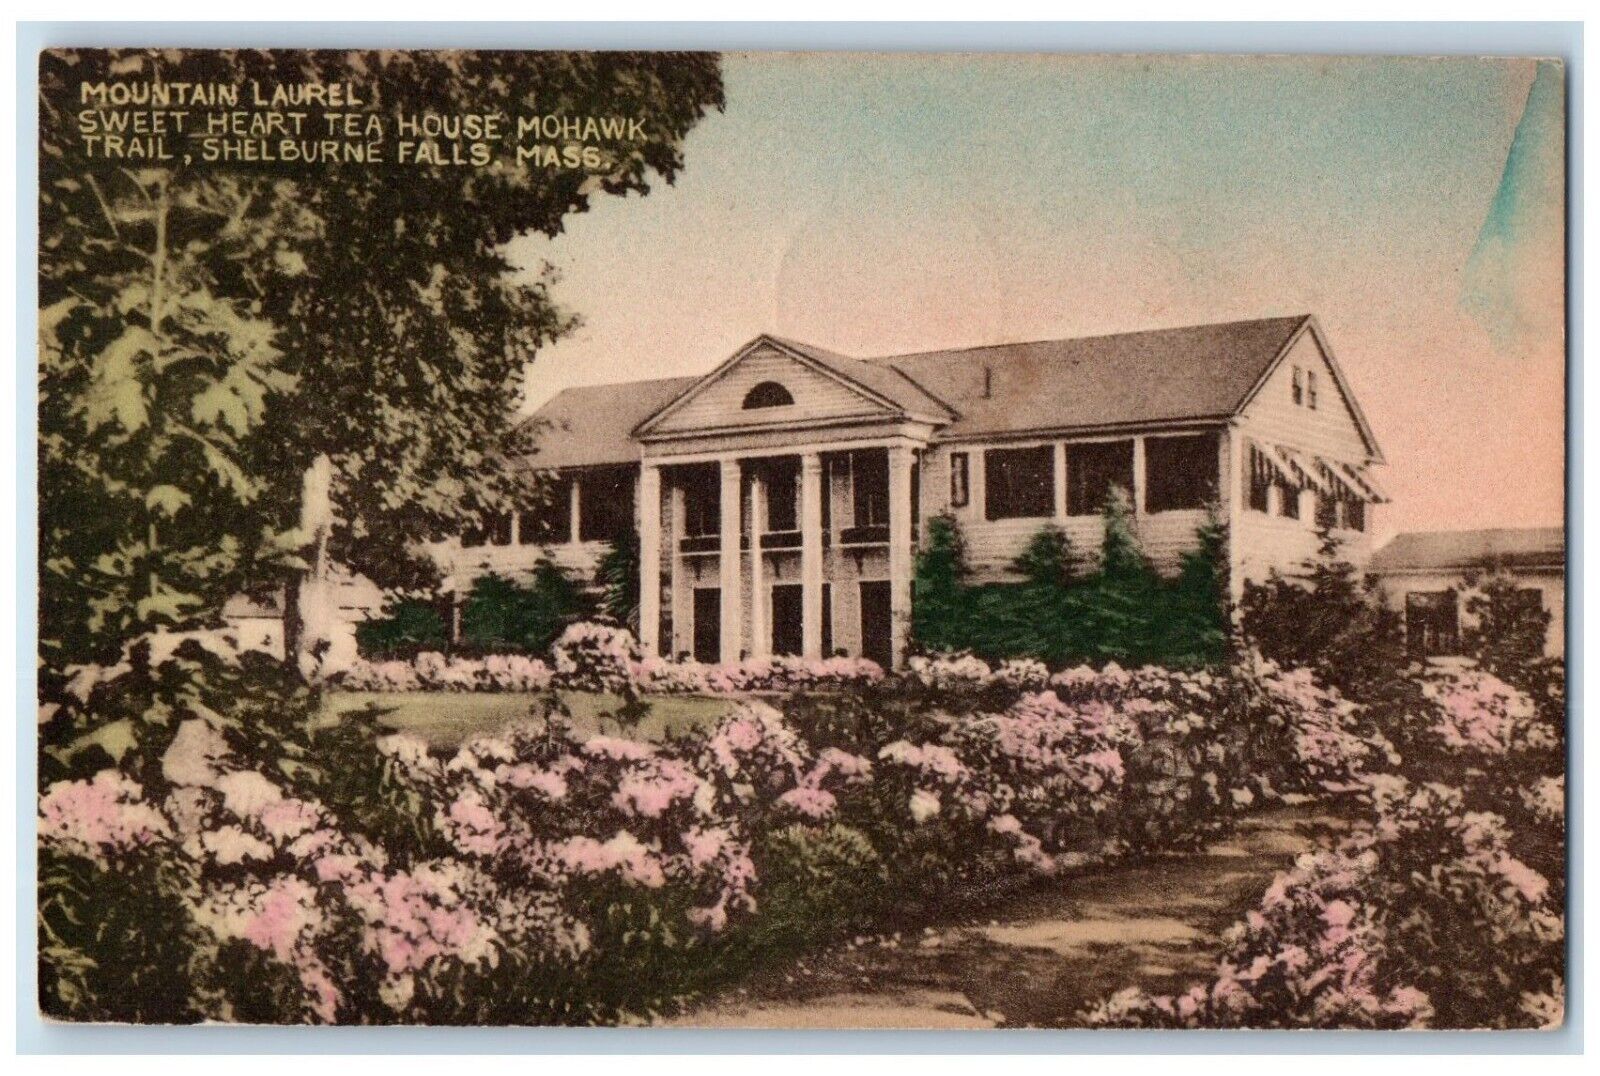 1948 Mountain Laurel Heart Tea House Mohawk Trail Shelburne Falls MA Postcard